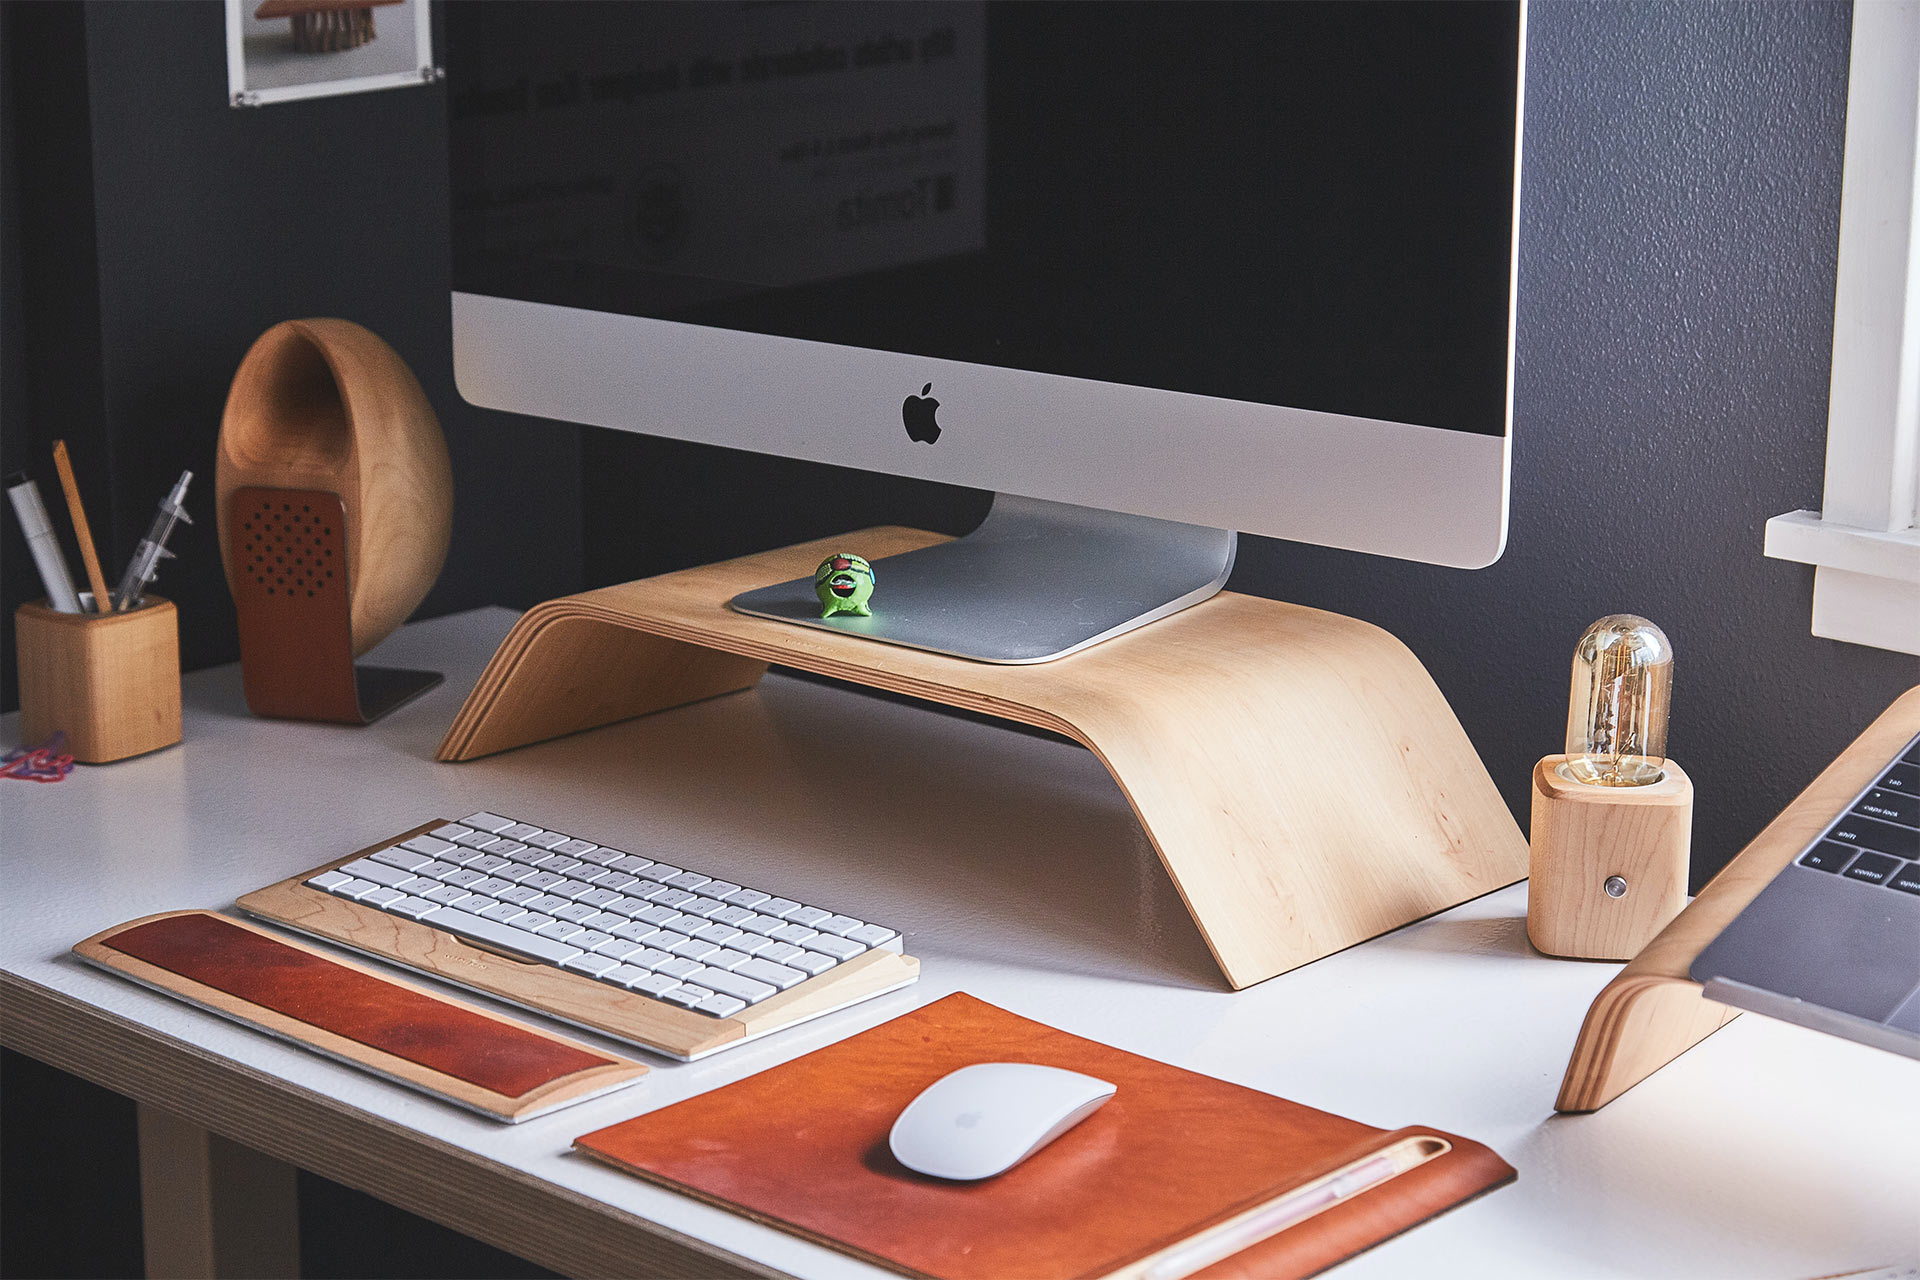 一台 iMac 放在桌上的木架上，配有無線鍵盤和滑鼠。